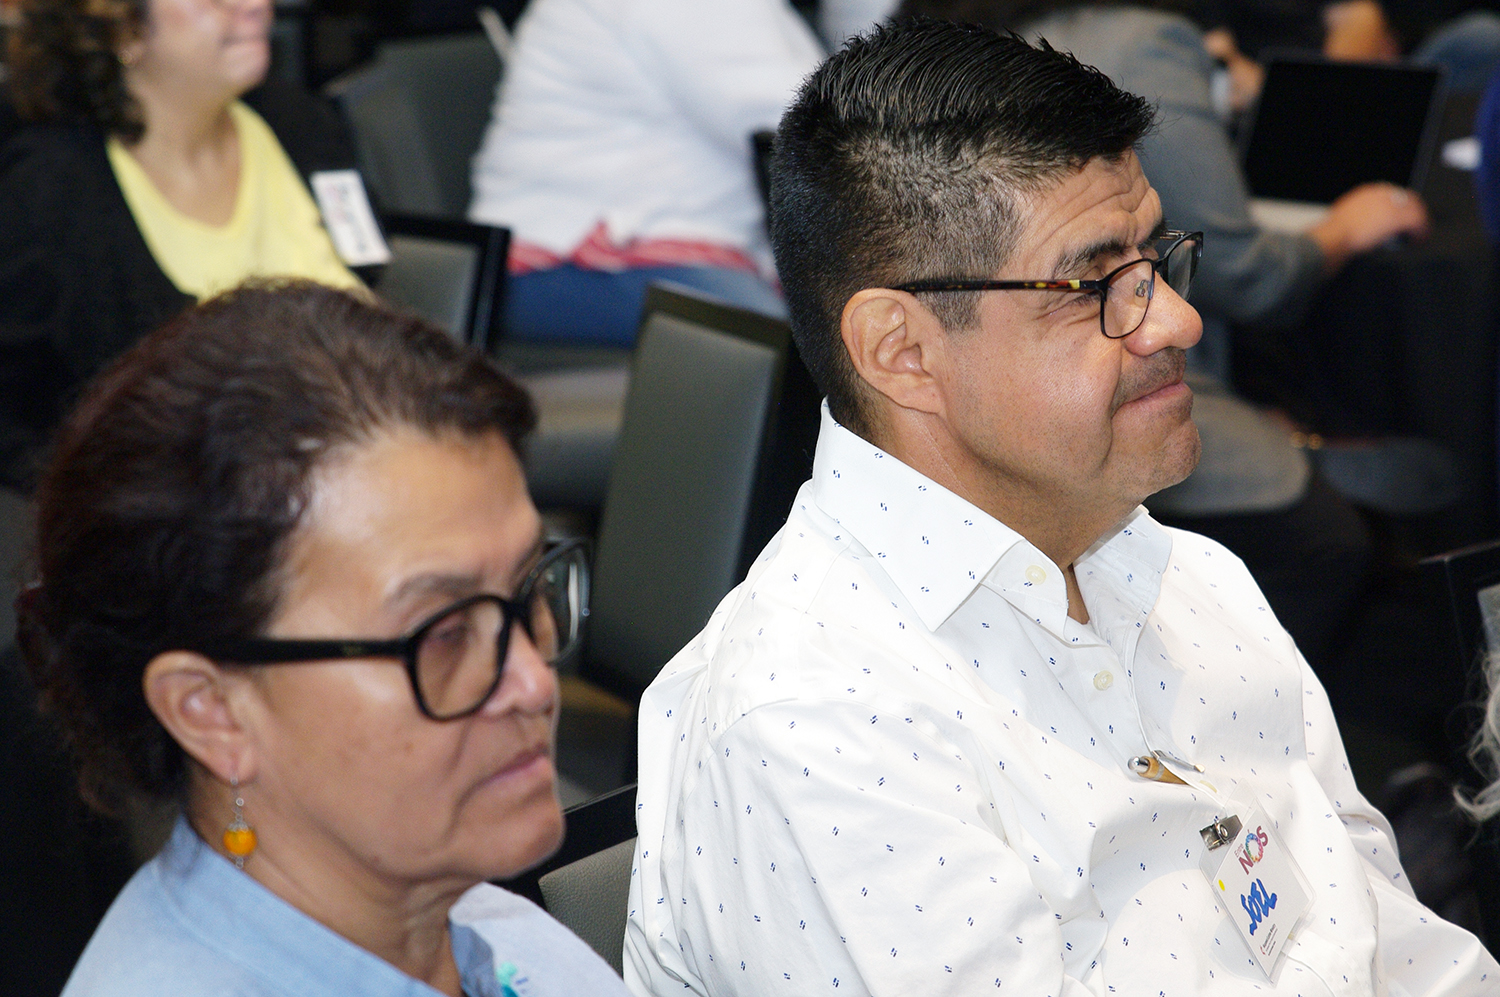 A Pastora Antonia “Toña” Ríos à esquerda e o Rev. Joel Hortiales à direita da imagem, servem a comunidade hispano-latina da Conferência Anual Califórnia-Pacífico. 